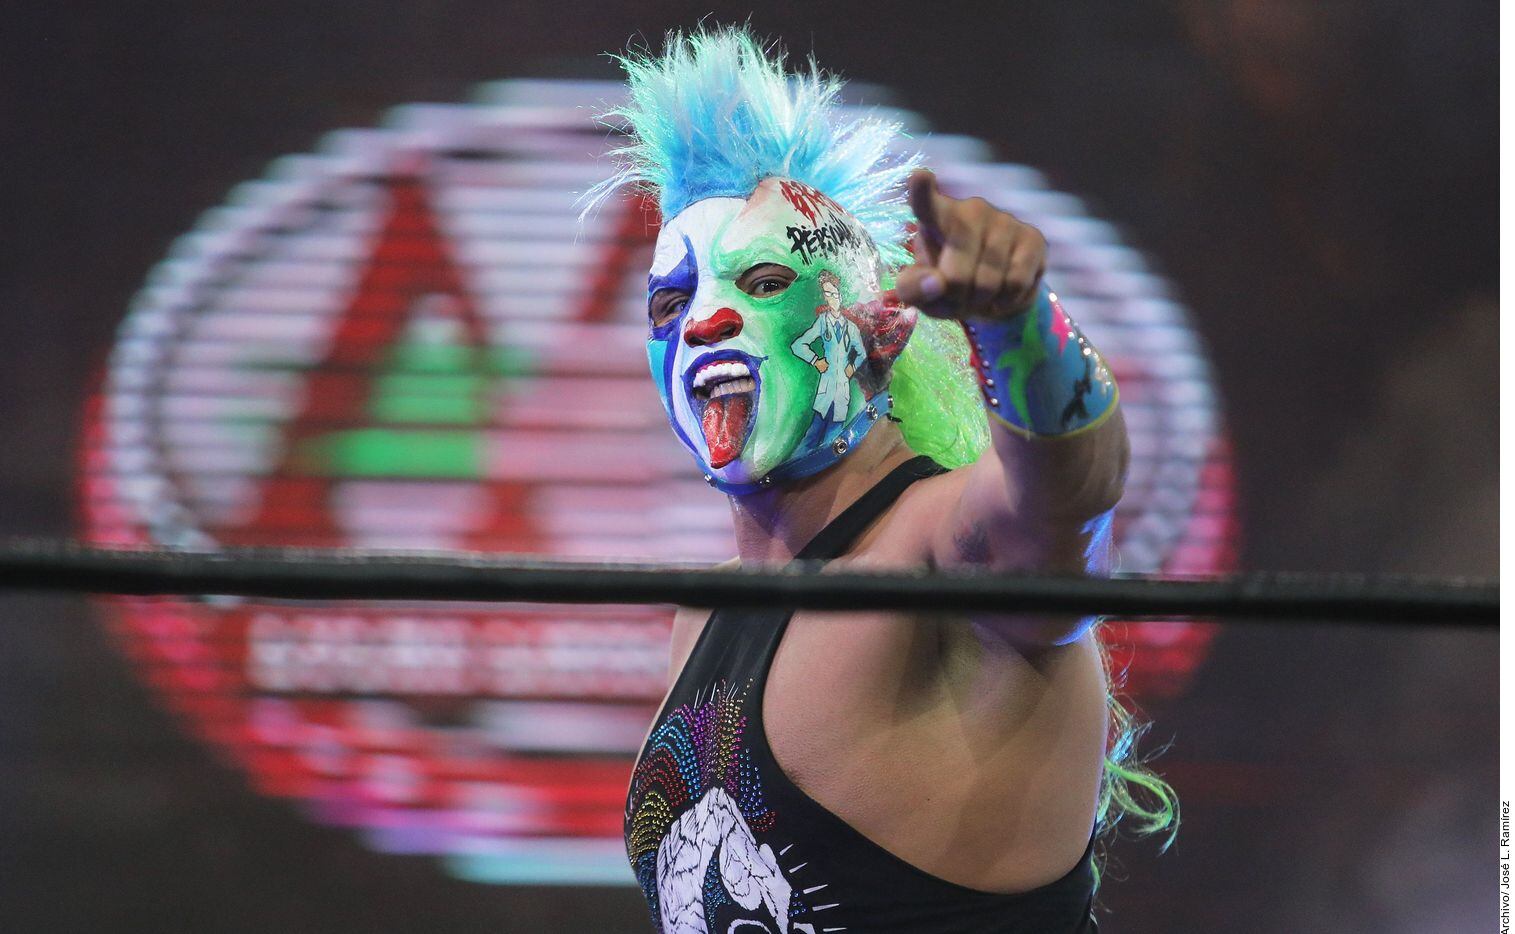 Psycho Clown, luchador de la Triple A de México, se vio afectado económicamente por la...